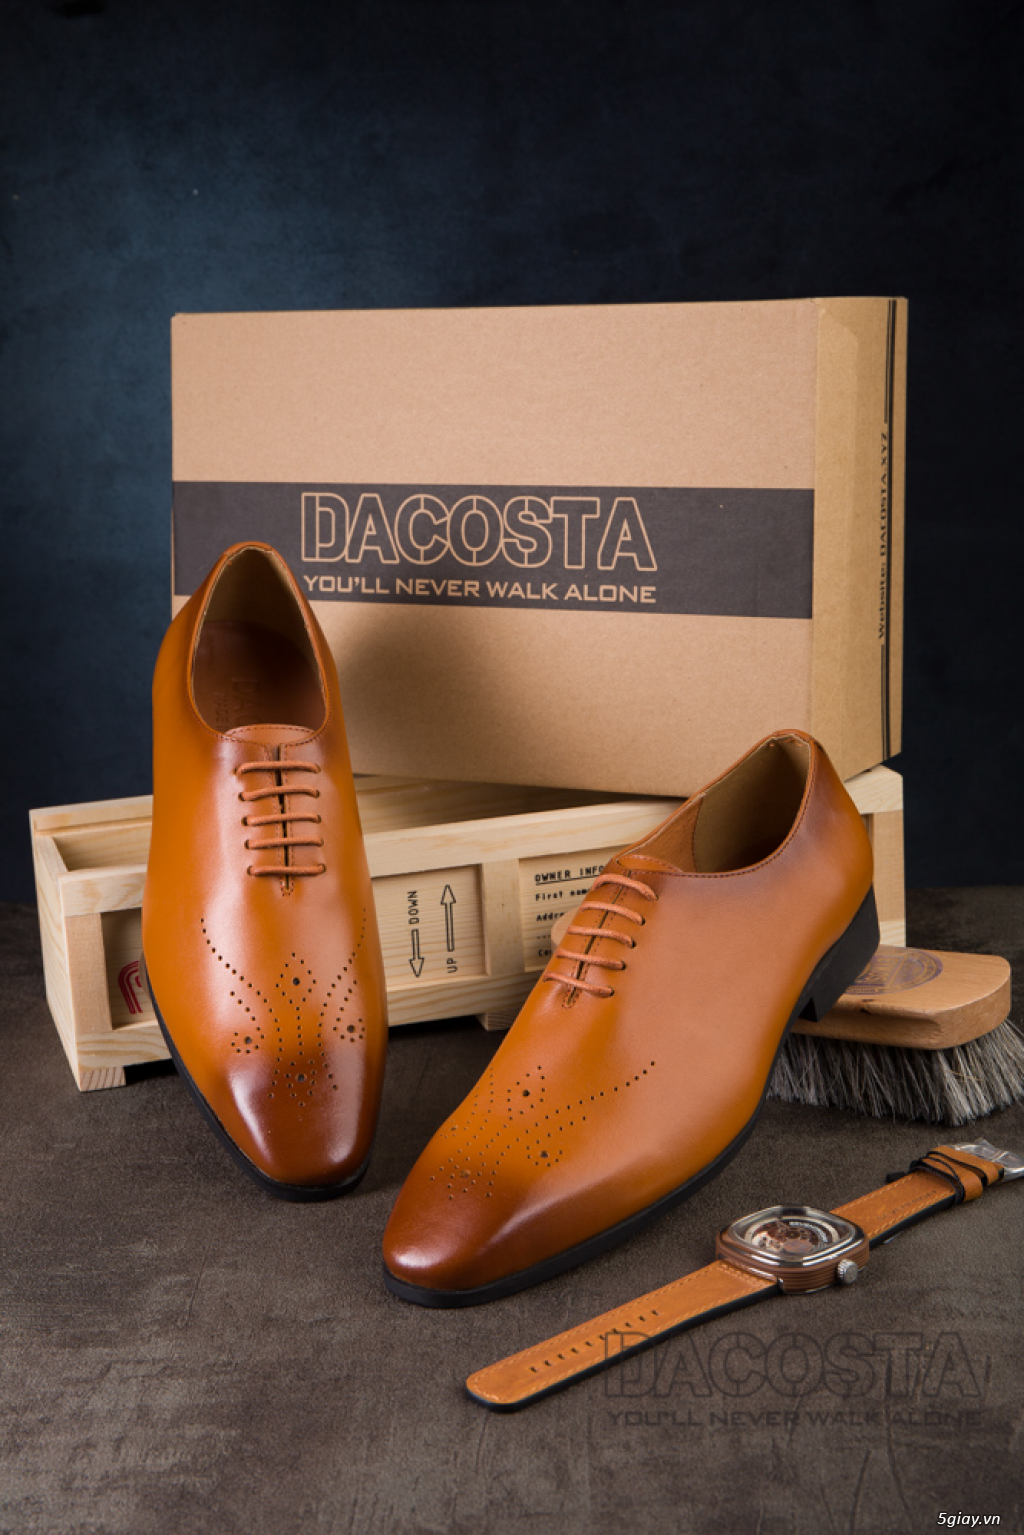 Tiệm Giày Dacosta - Những Mẫu Giày Tây Oxford Hot Nhất 2019 - 8